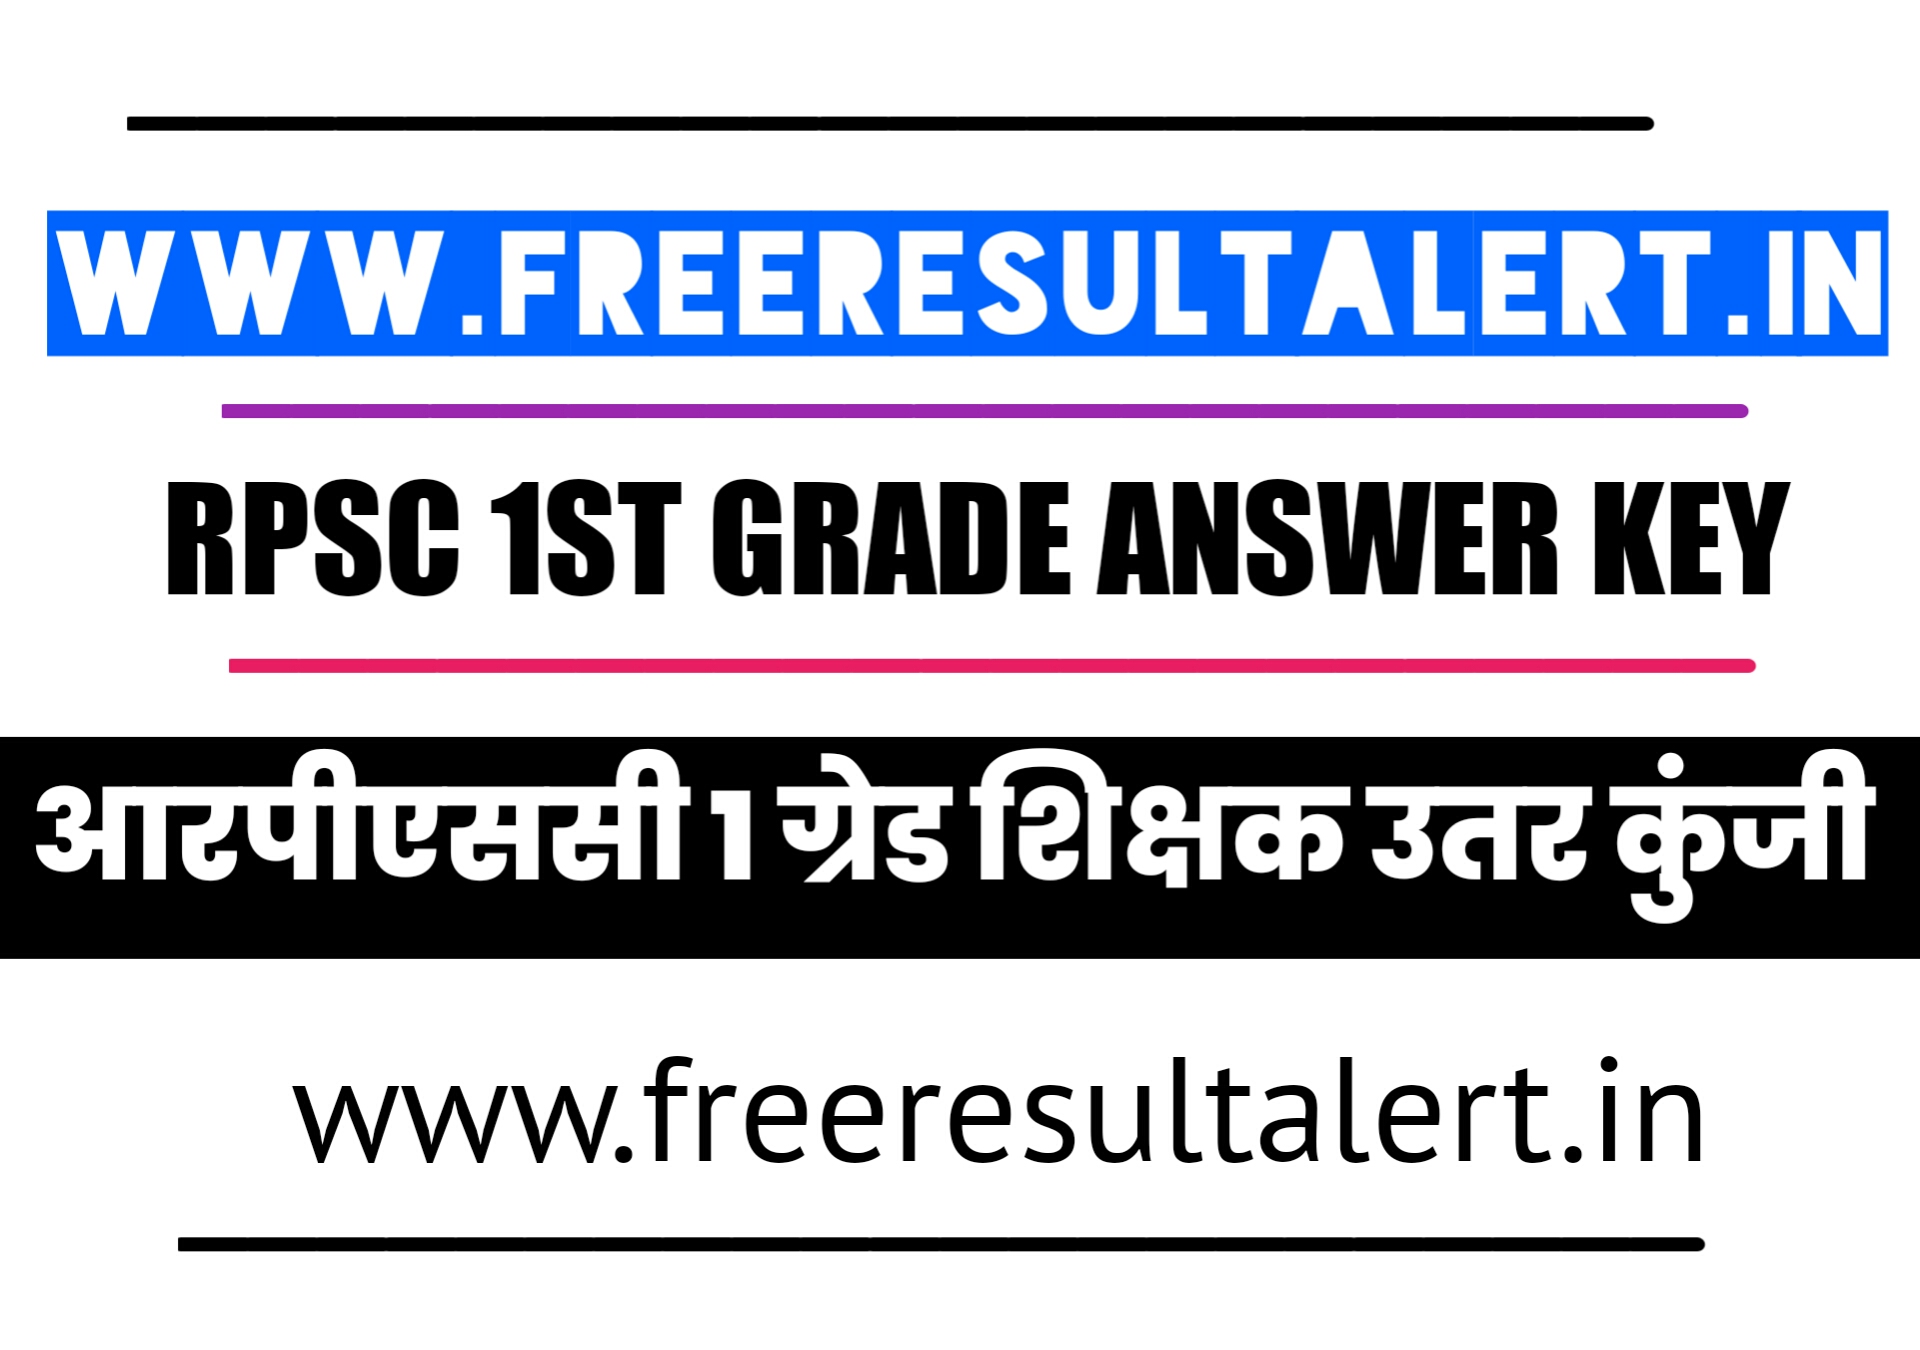 RPSC 1st Grade GK Answer key 09 Jan 2020